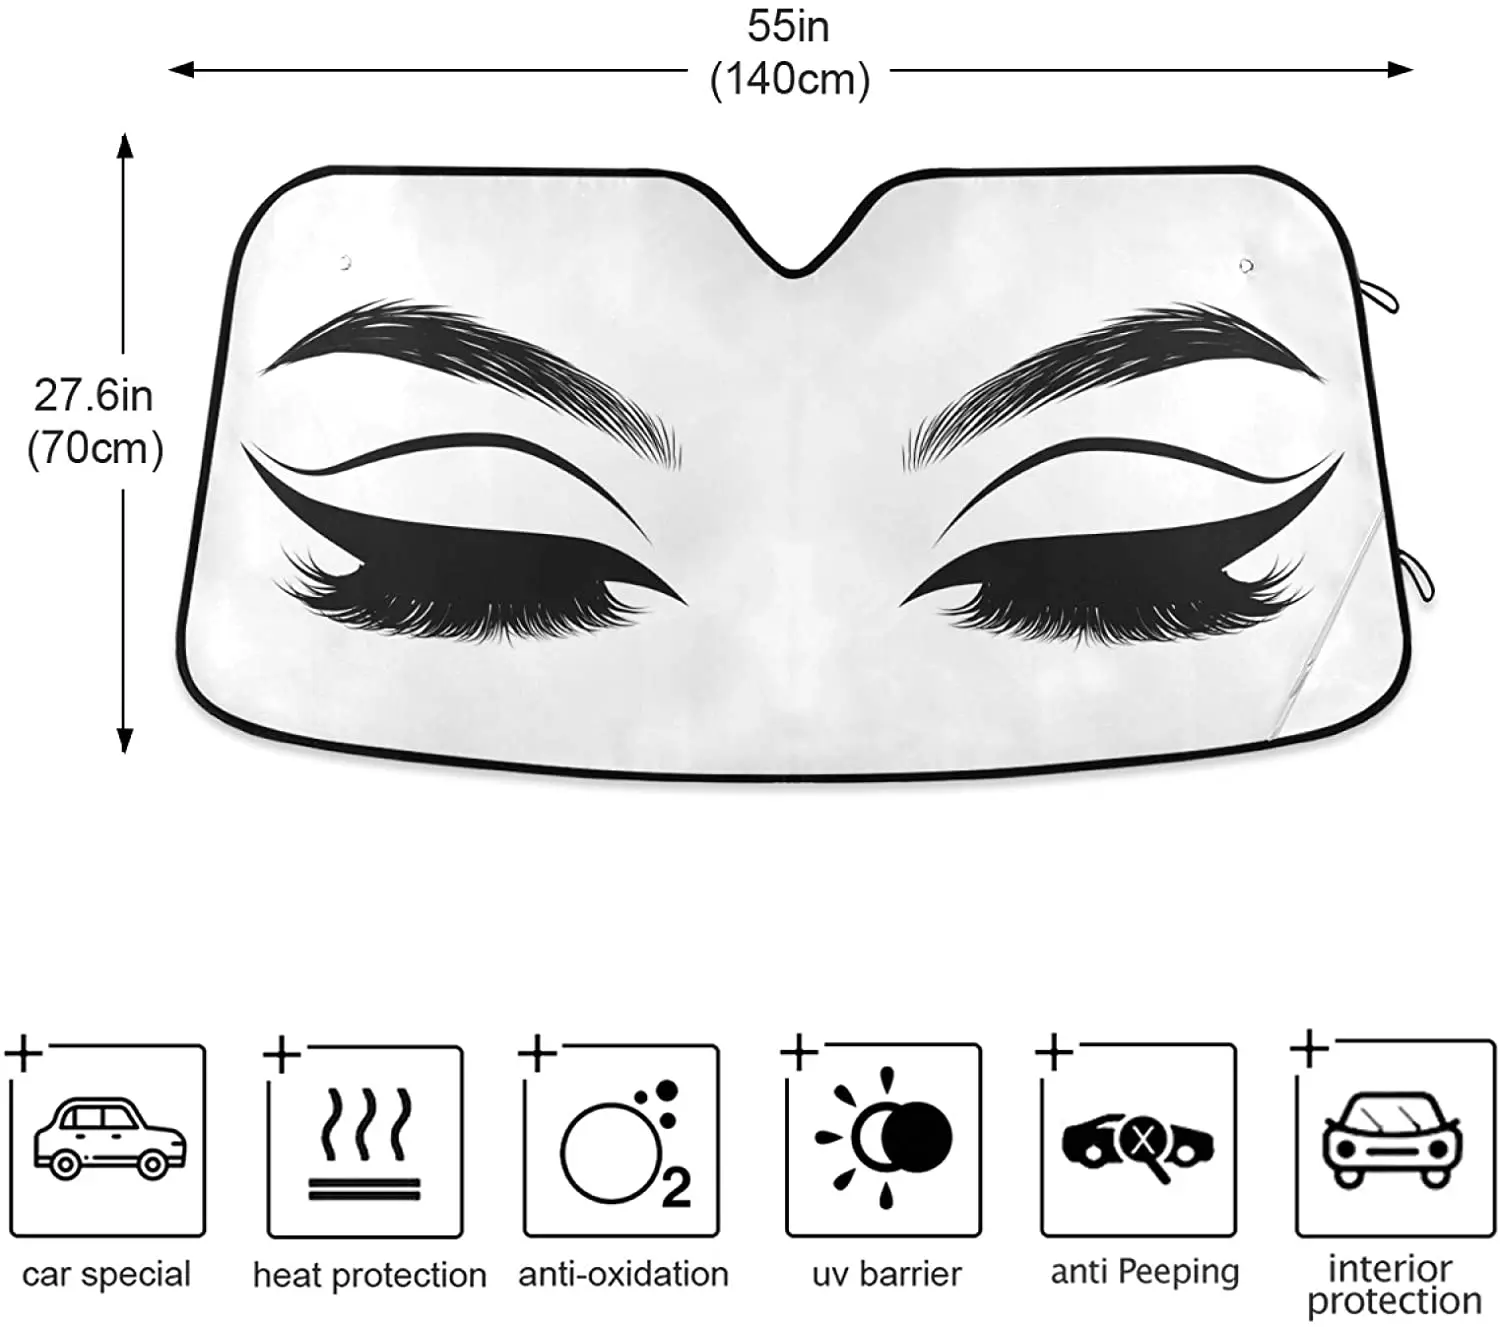 Oarencol Auto Parasolar Femeie Ochii Gene Parbriz Auto Soare Pliabila Umbra Raze UV Parasolar Protector Să Păstreze2